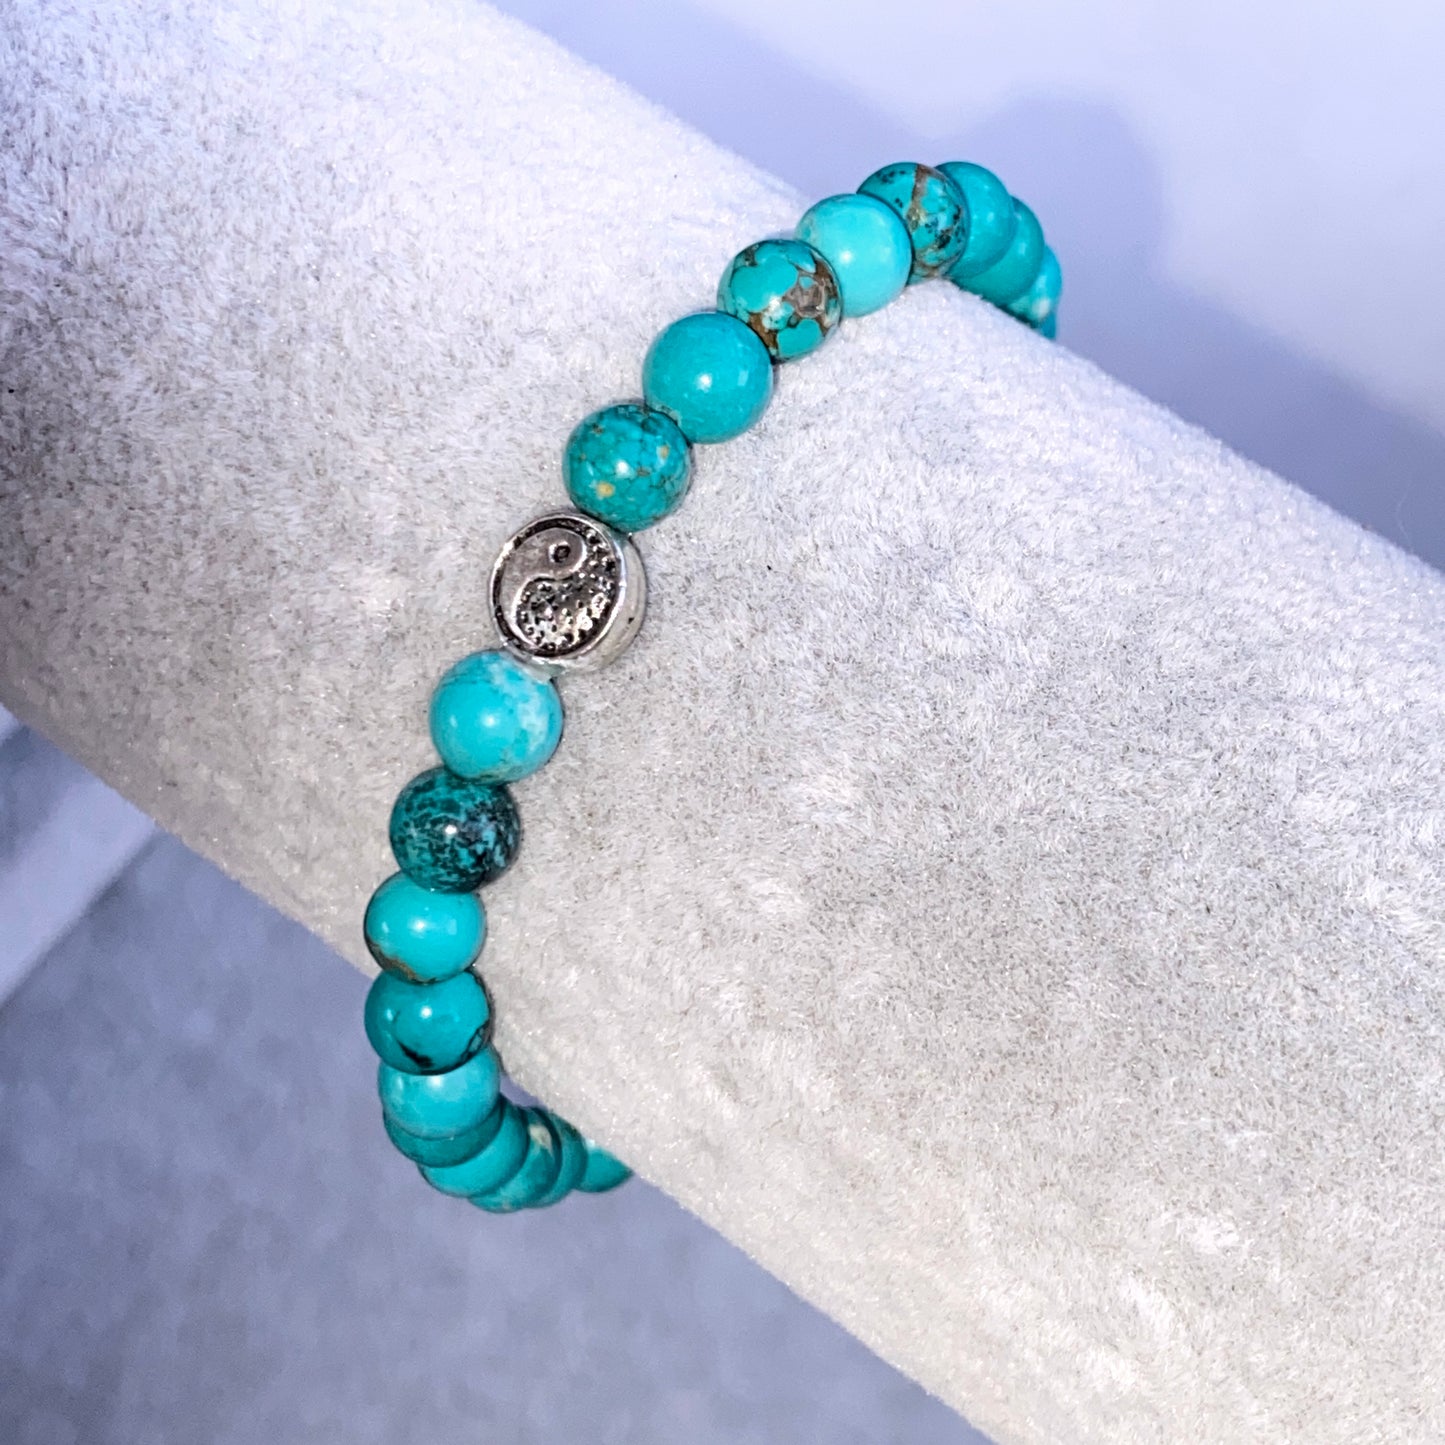 Turquoise and Pewter Yin Yang Bracelet